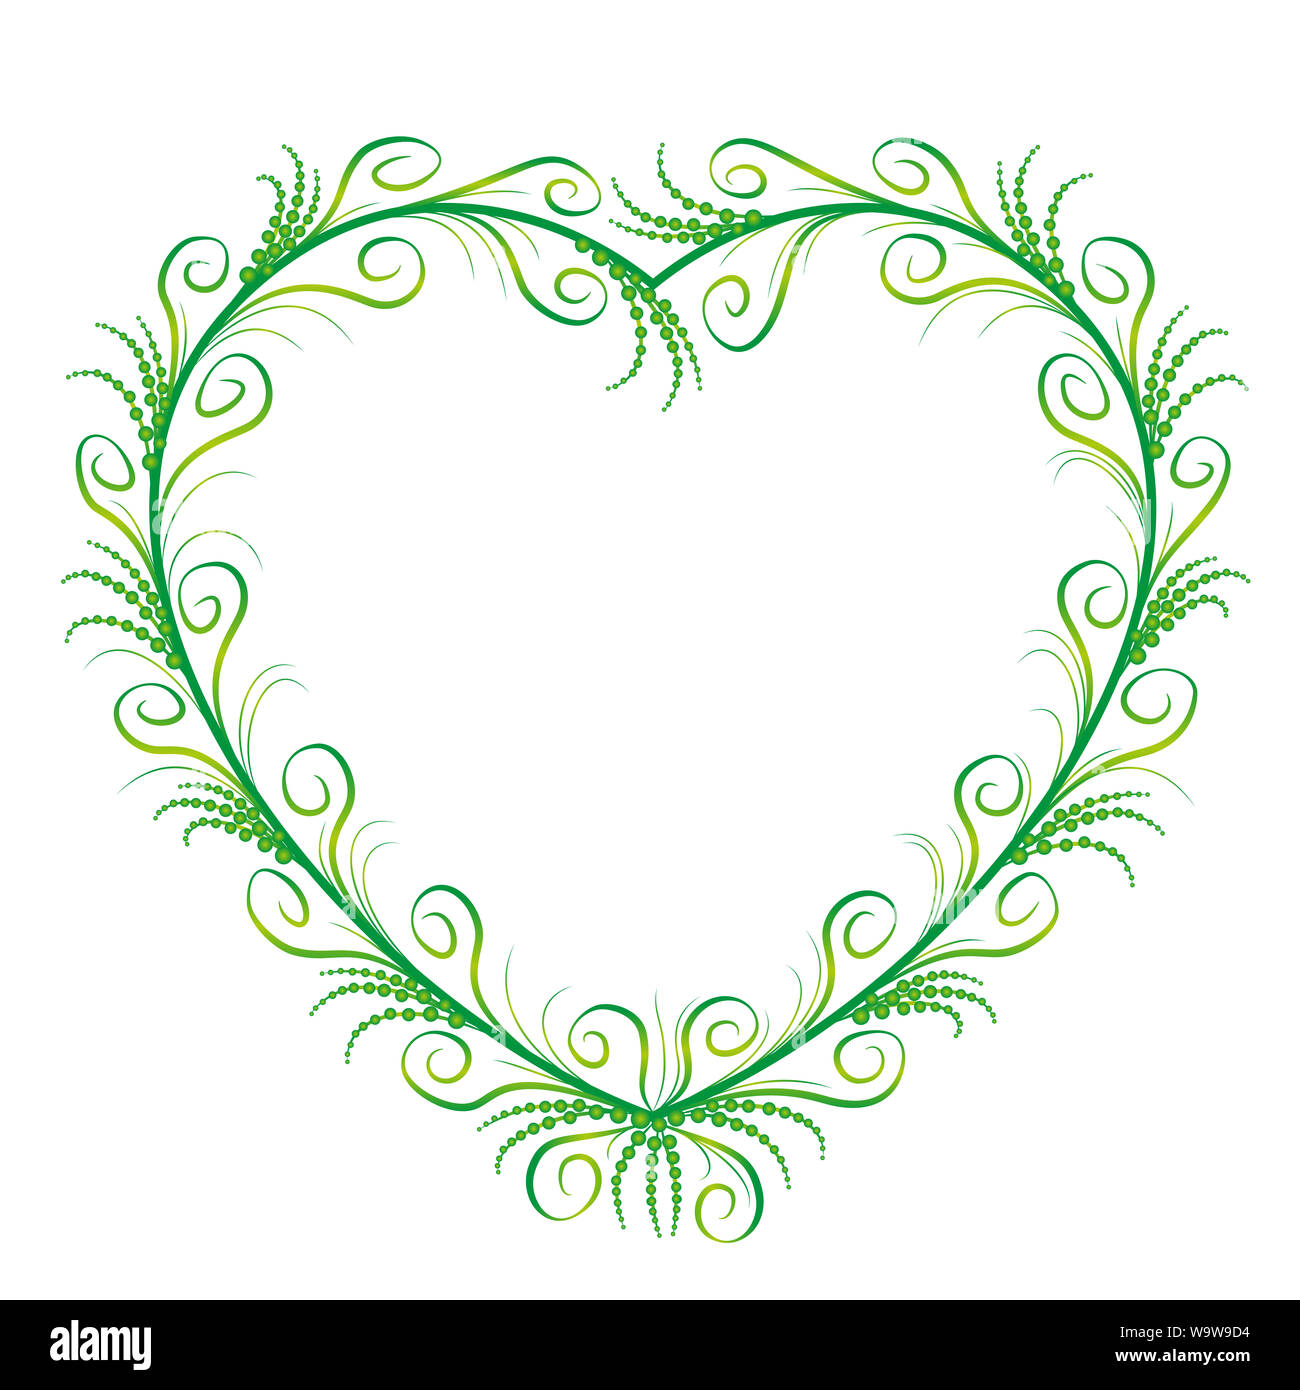 Coeur vert élégant, romantique avec ornement en filigrane, délicat, gracieux et sylphlike s'épanouit - illustration sur fond blanc. Banque D'Images